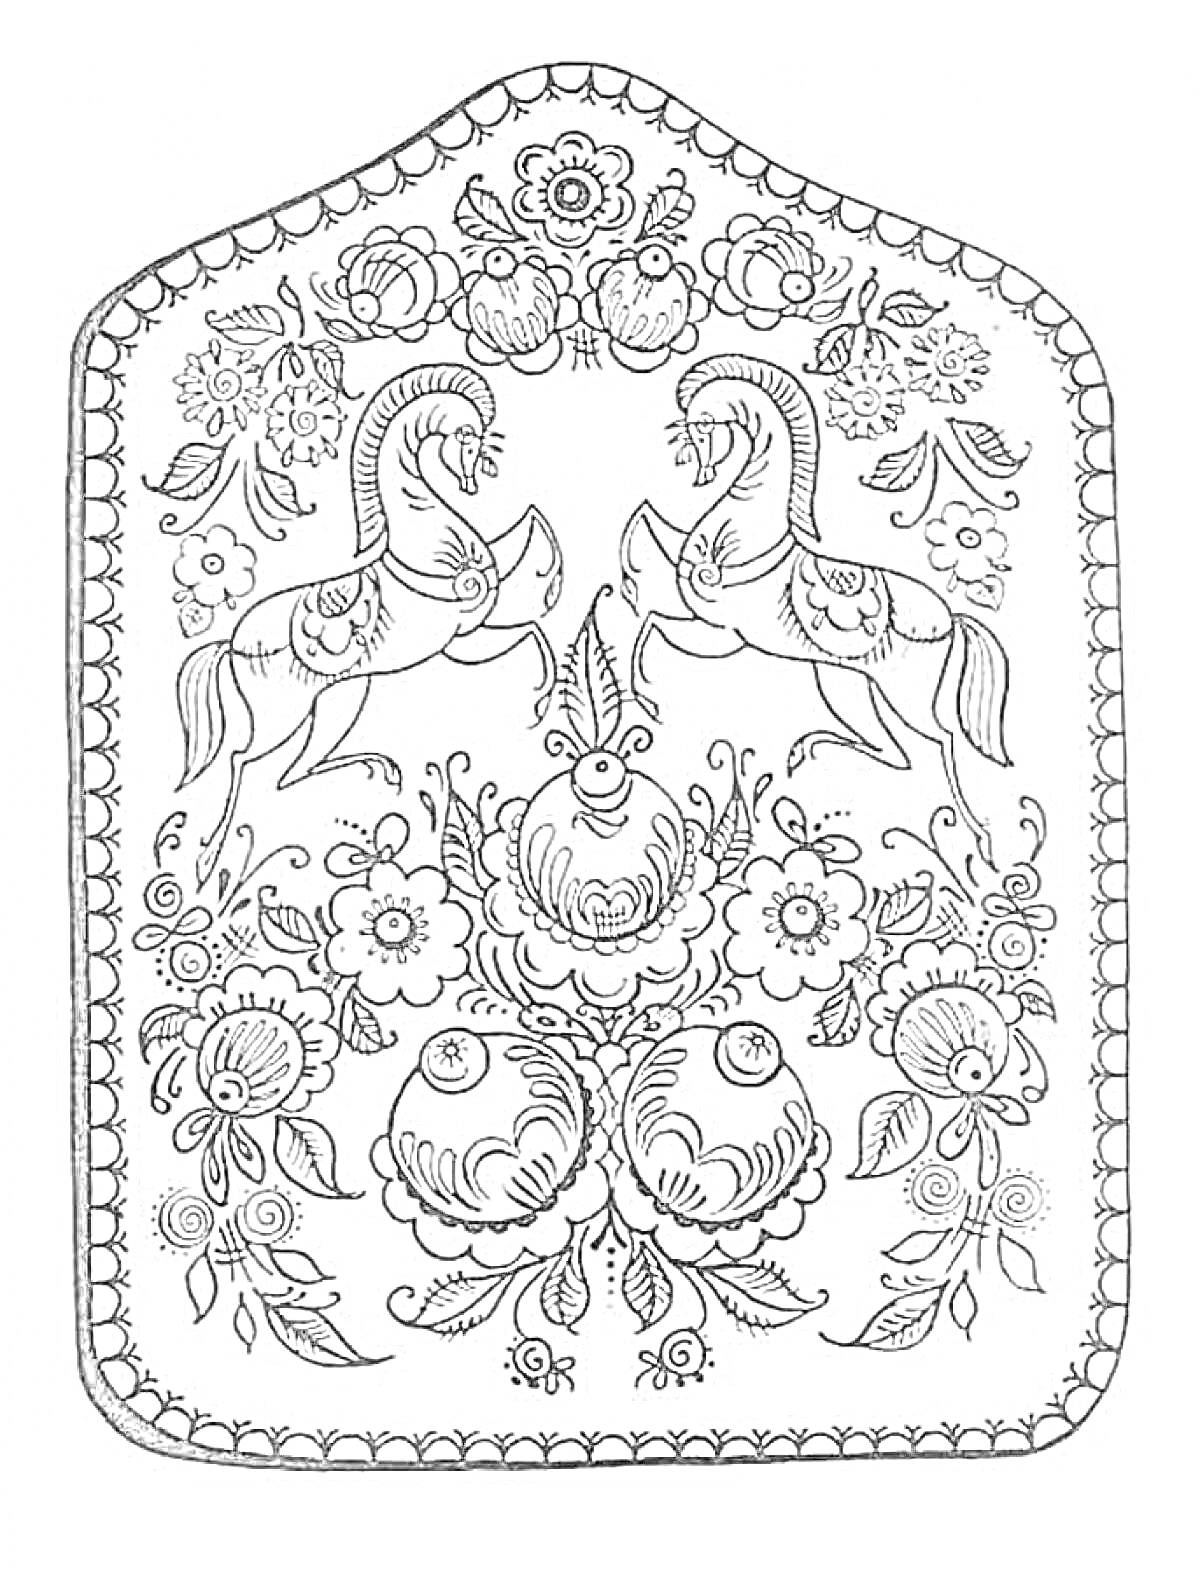 Раскраска Городецкая роспись с лошадьми, цветами и растительными орнаментами, узор на щите